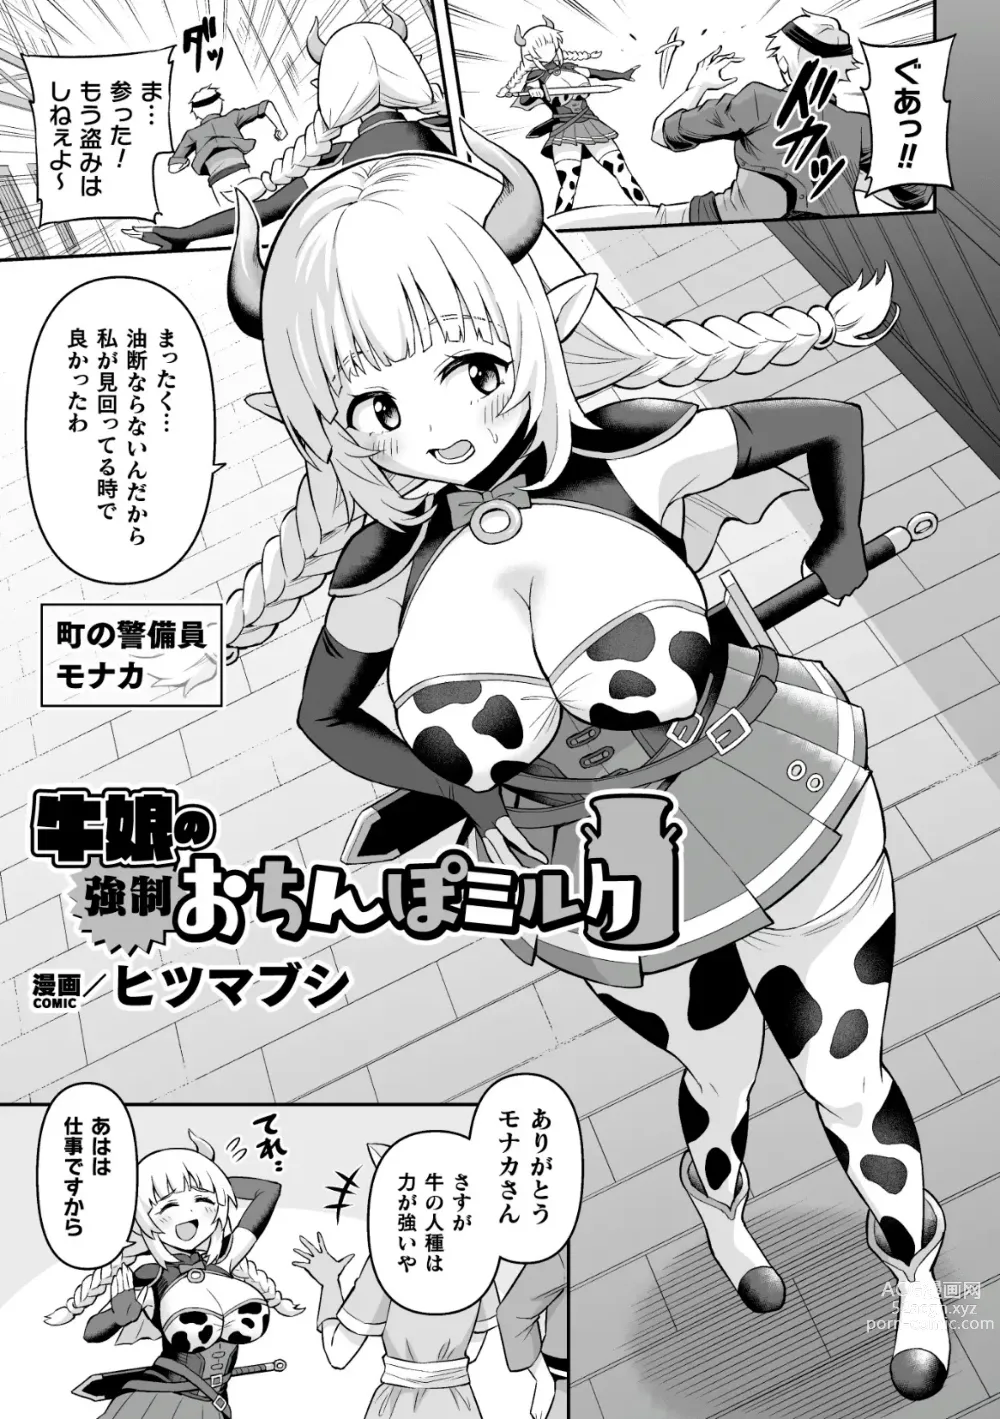 Page 15 of manga 2D Comic Magazine Futanari Kabe Sao Kabe Shiri Futanari Heroine Sakusei Iki Jigoku! Vol. 1